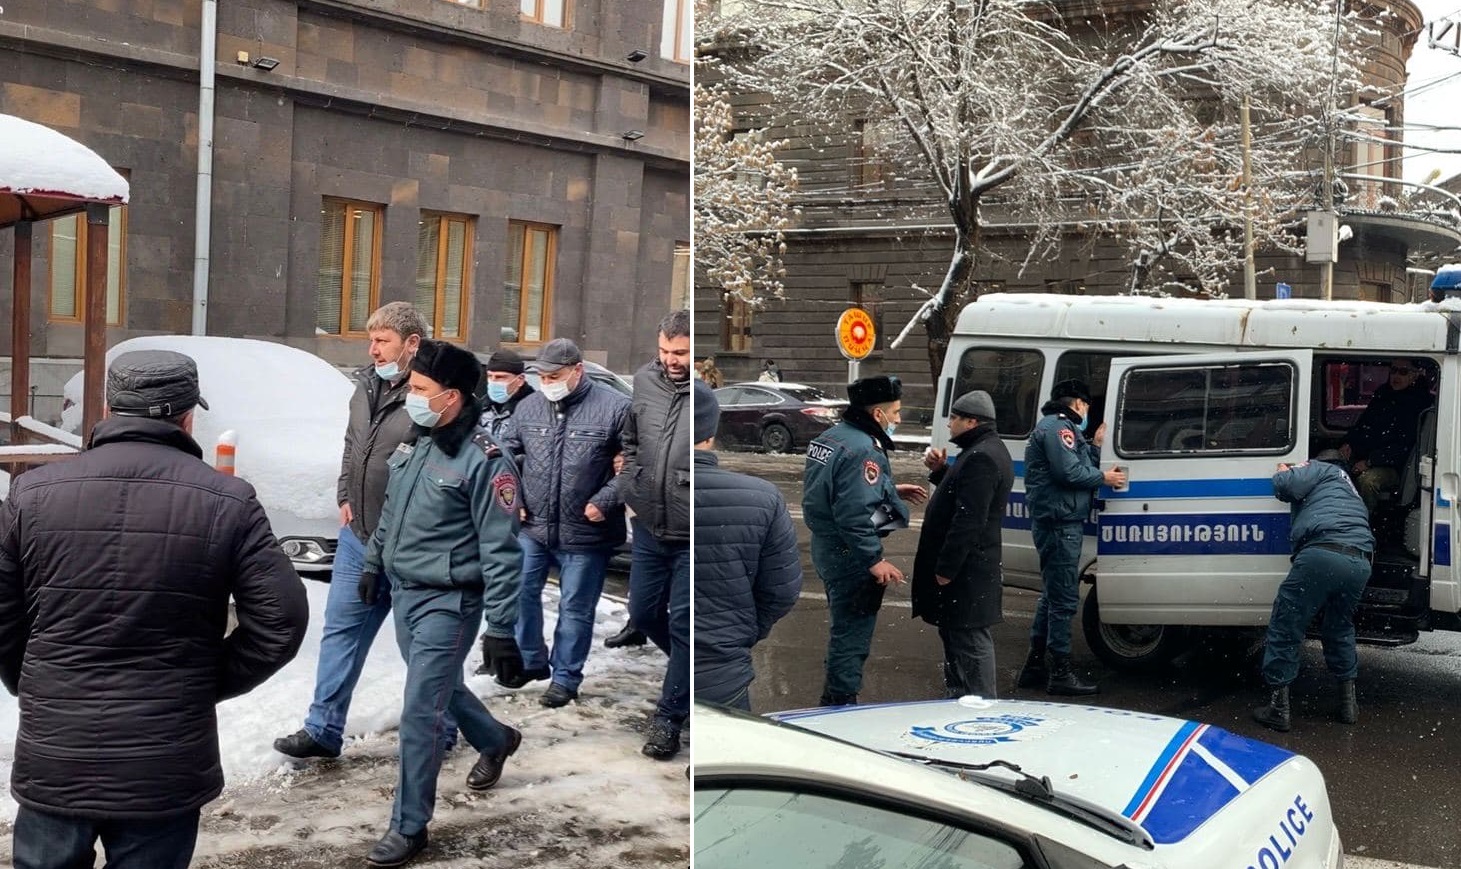 Յուրի Խաչատուրովի և Շահեն Մեղրյանի որդիները ևս բերման են ենթարկվել